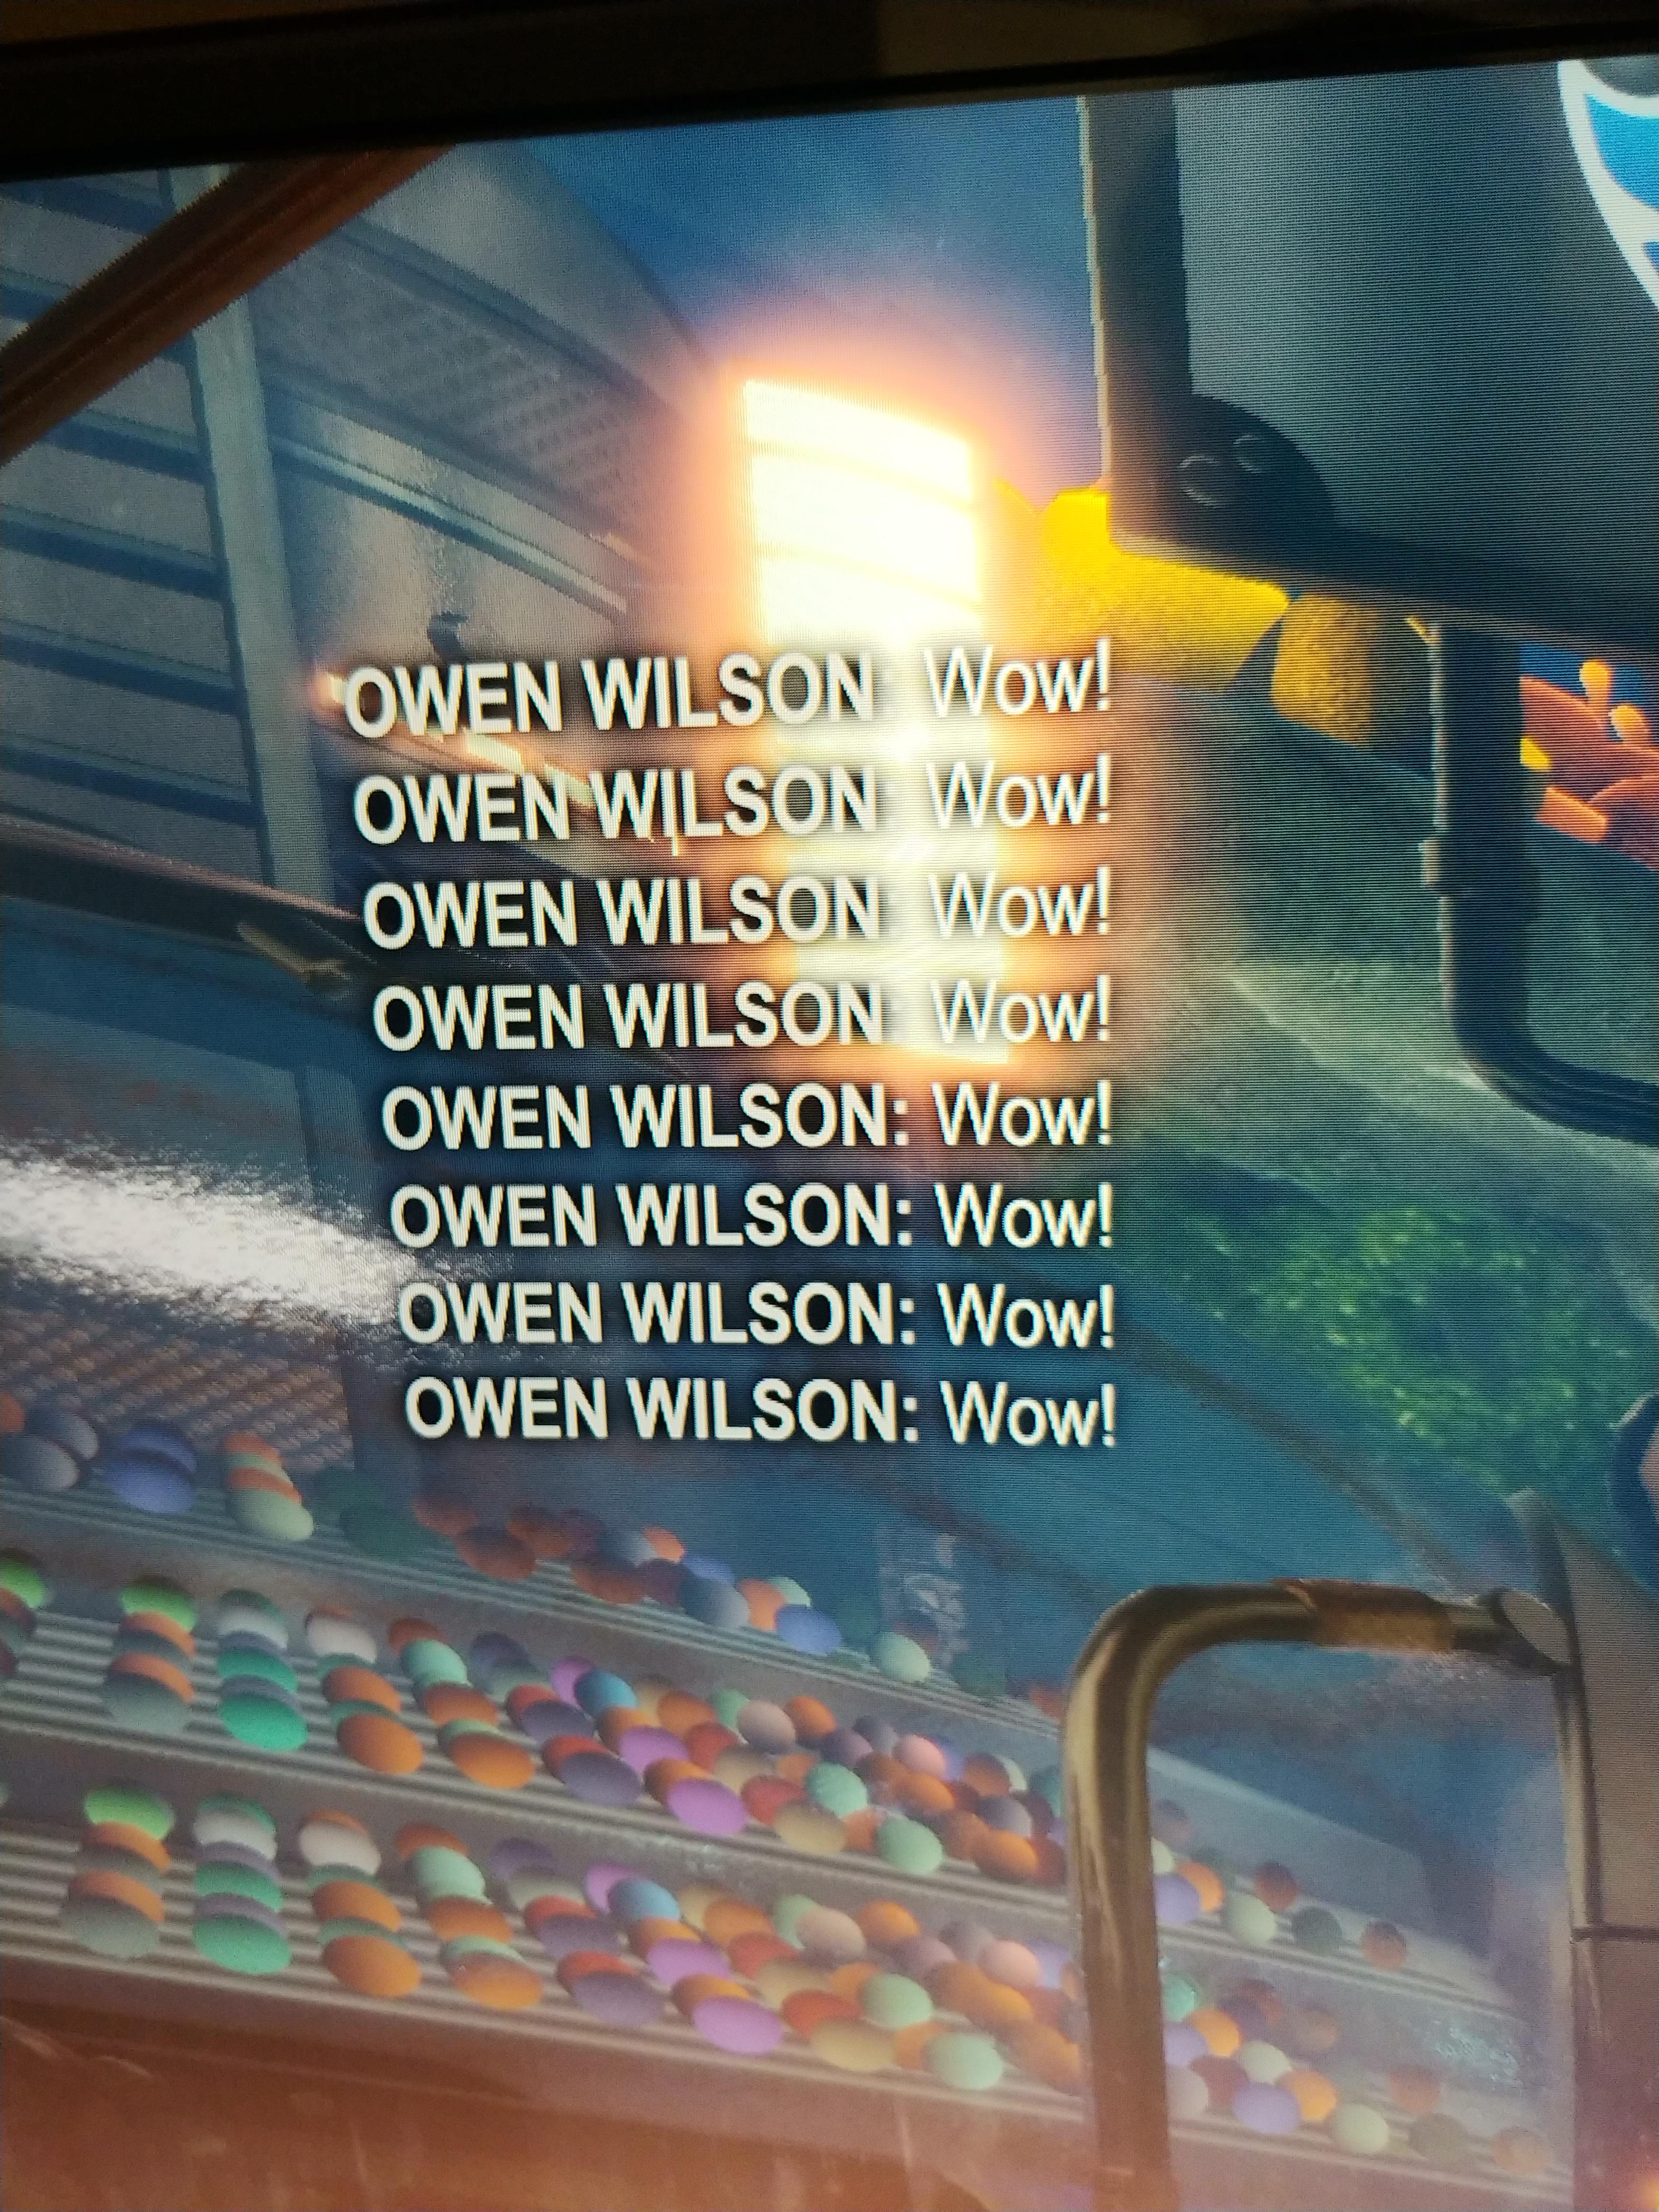 world - Owen Wilson Wow! Owen Wilson Wow! Owen Wilson Wow! Owen Wilson Wow! Owen Wilson Wow! Owen Wilson Wow! Owen Wilson Wow! Owen Wilson Wow!